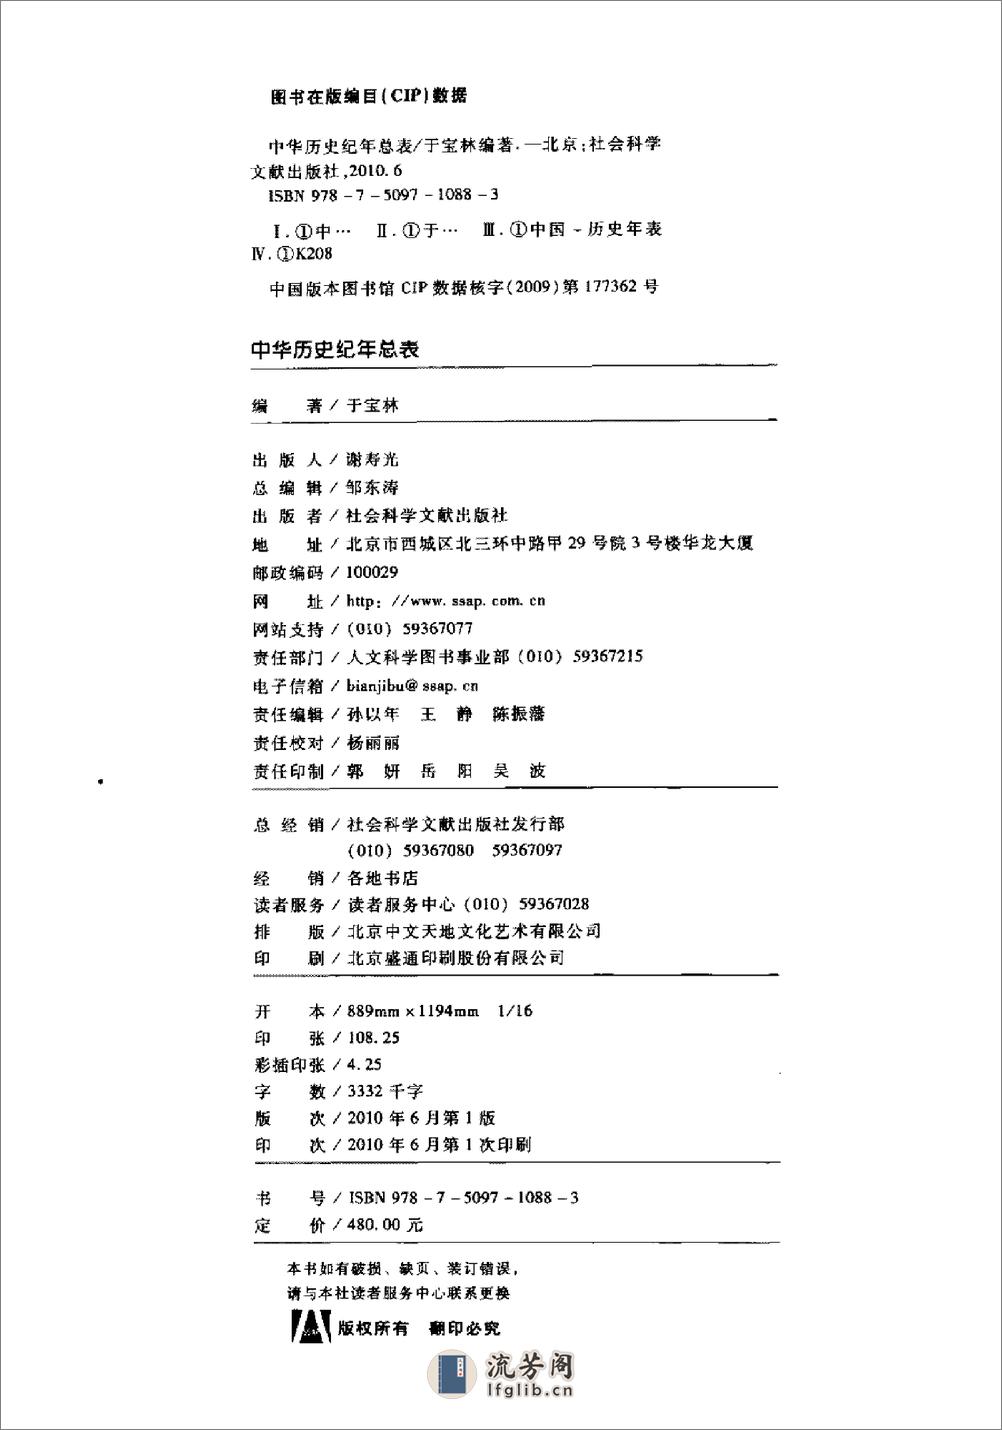 中华历史纪年总表·于宝林·社科文献2010 - 第3页预览图